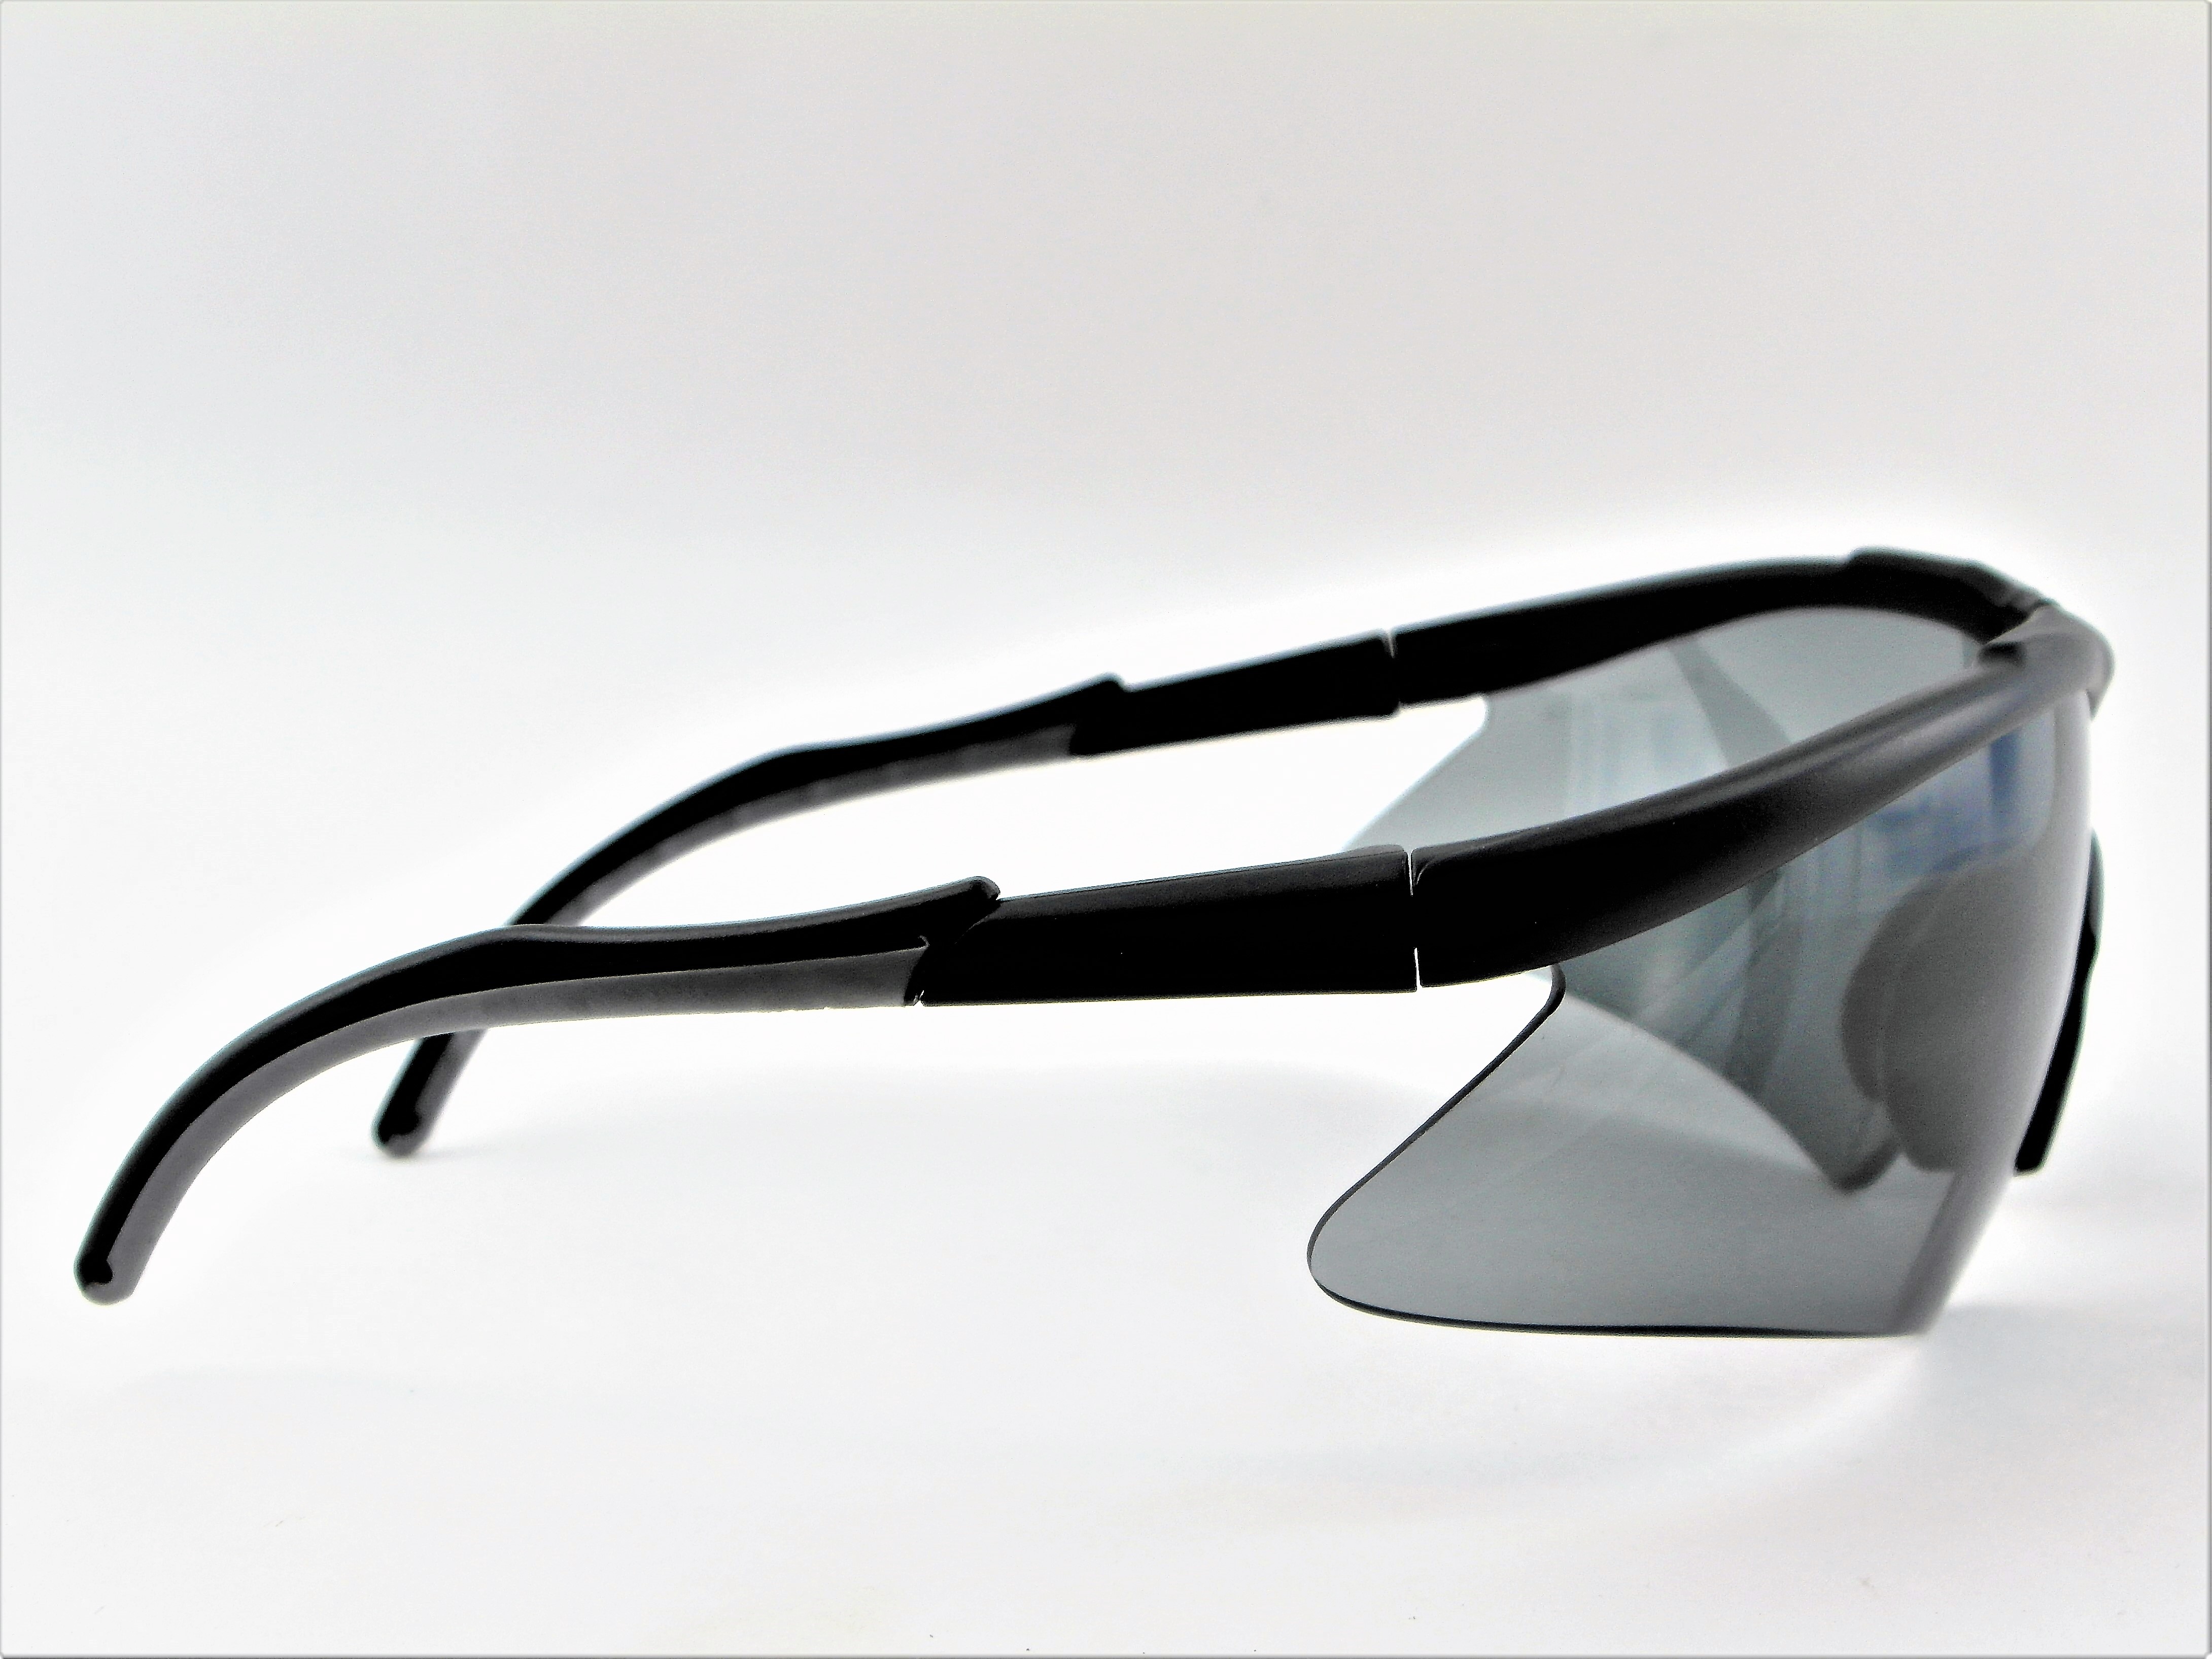 Sportschützenbrille, OptiRock Antibeschlag, Farbe: getönt